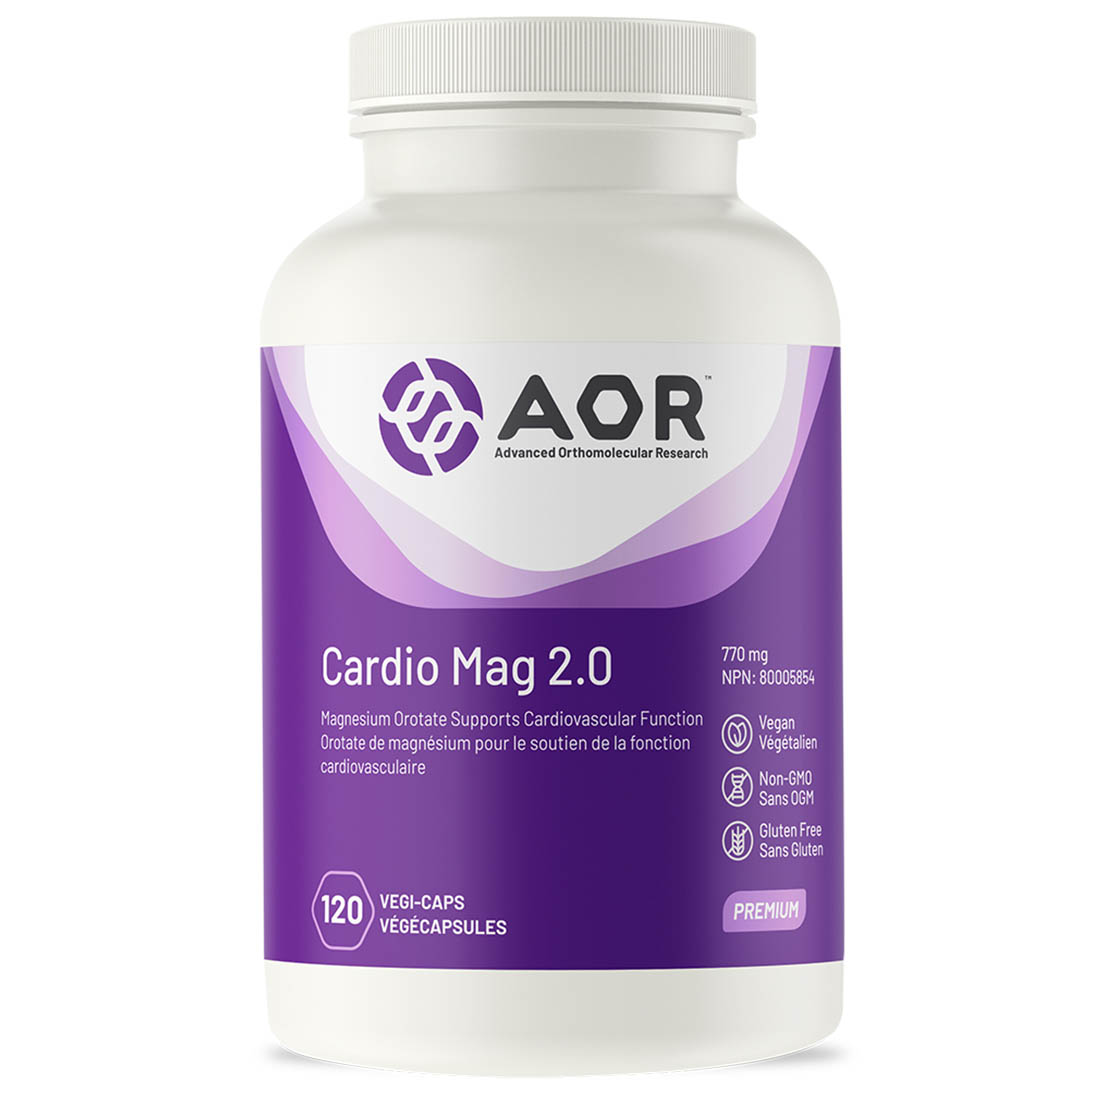 AOR Cardio Mag 2.0 Magnesium Orotate 770mg, 120 Vegi-Capsules